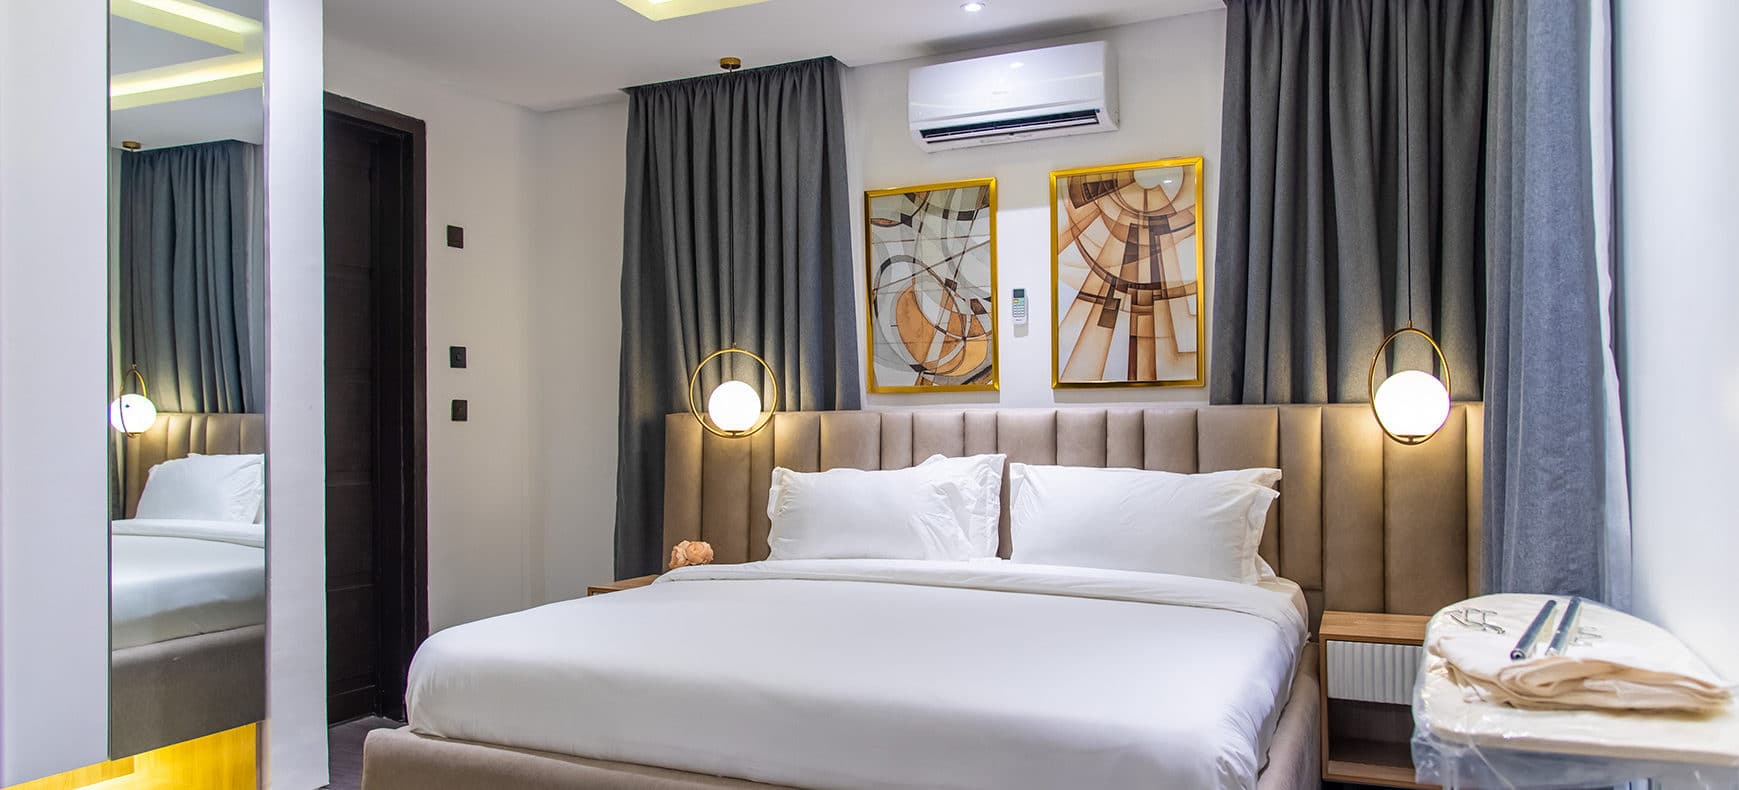 Luxurious 1 Bedroom Apartment Short Let In Lagos Nigeria